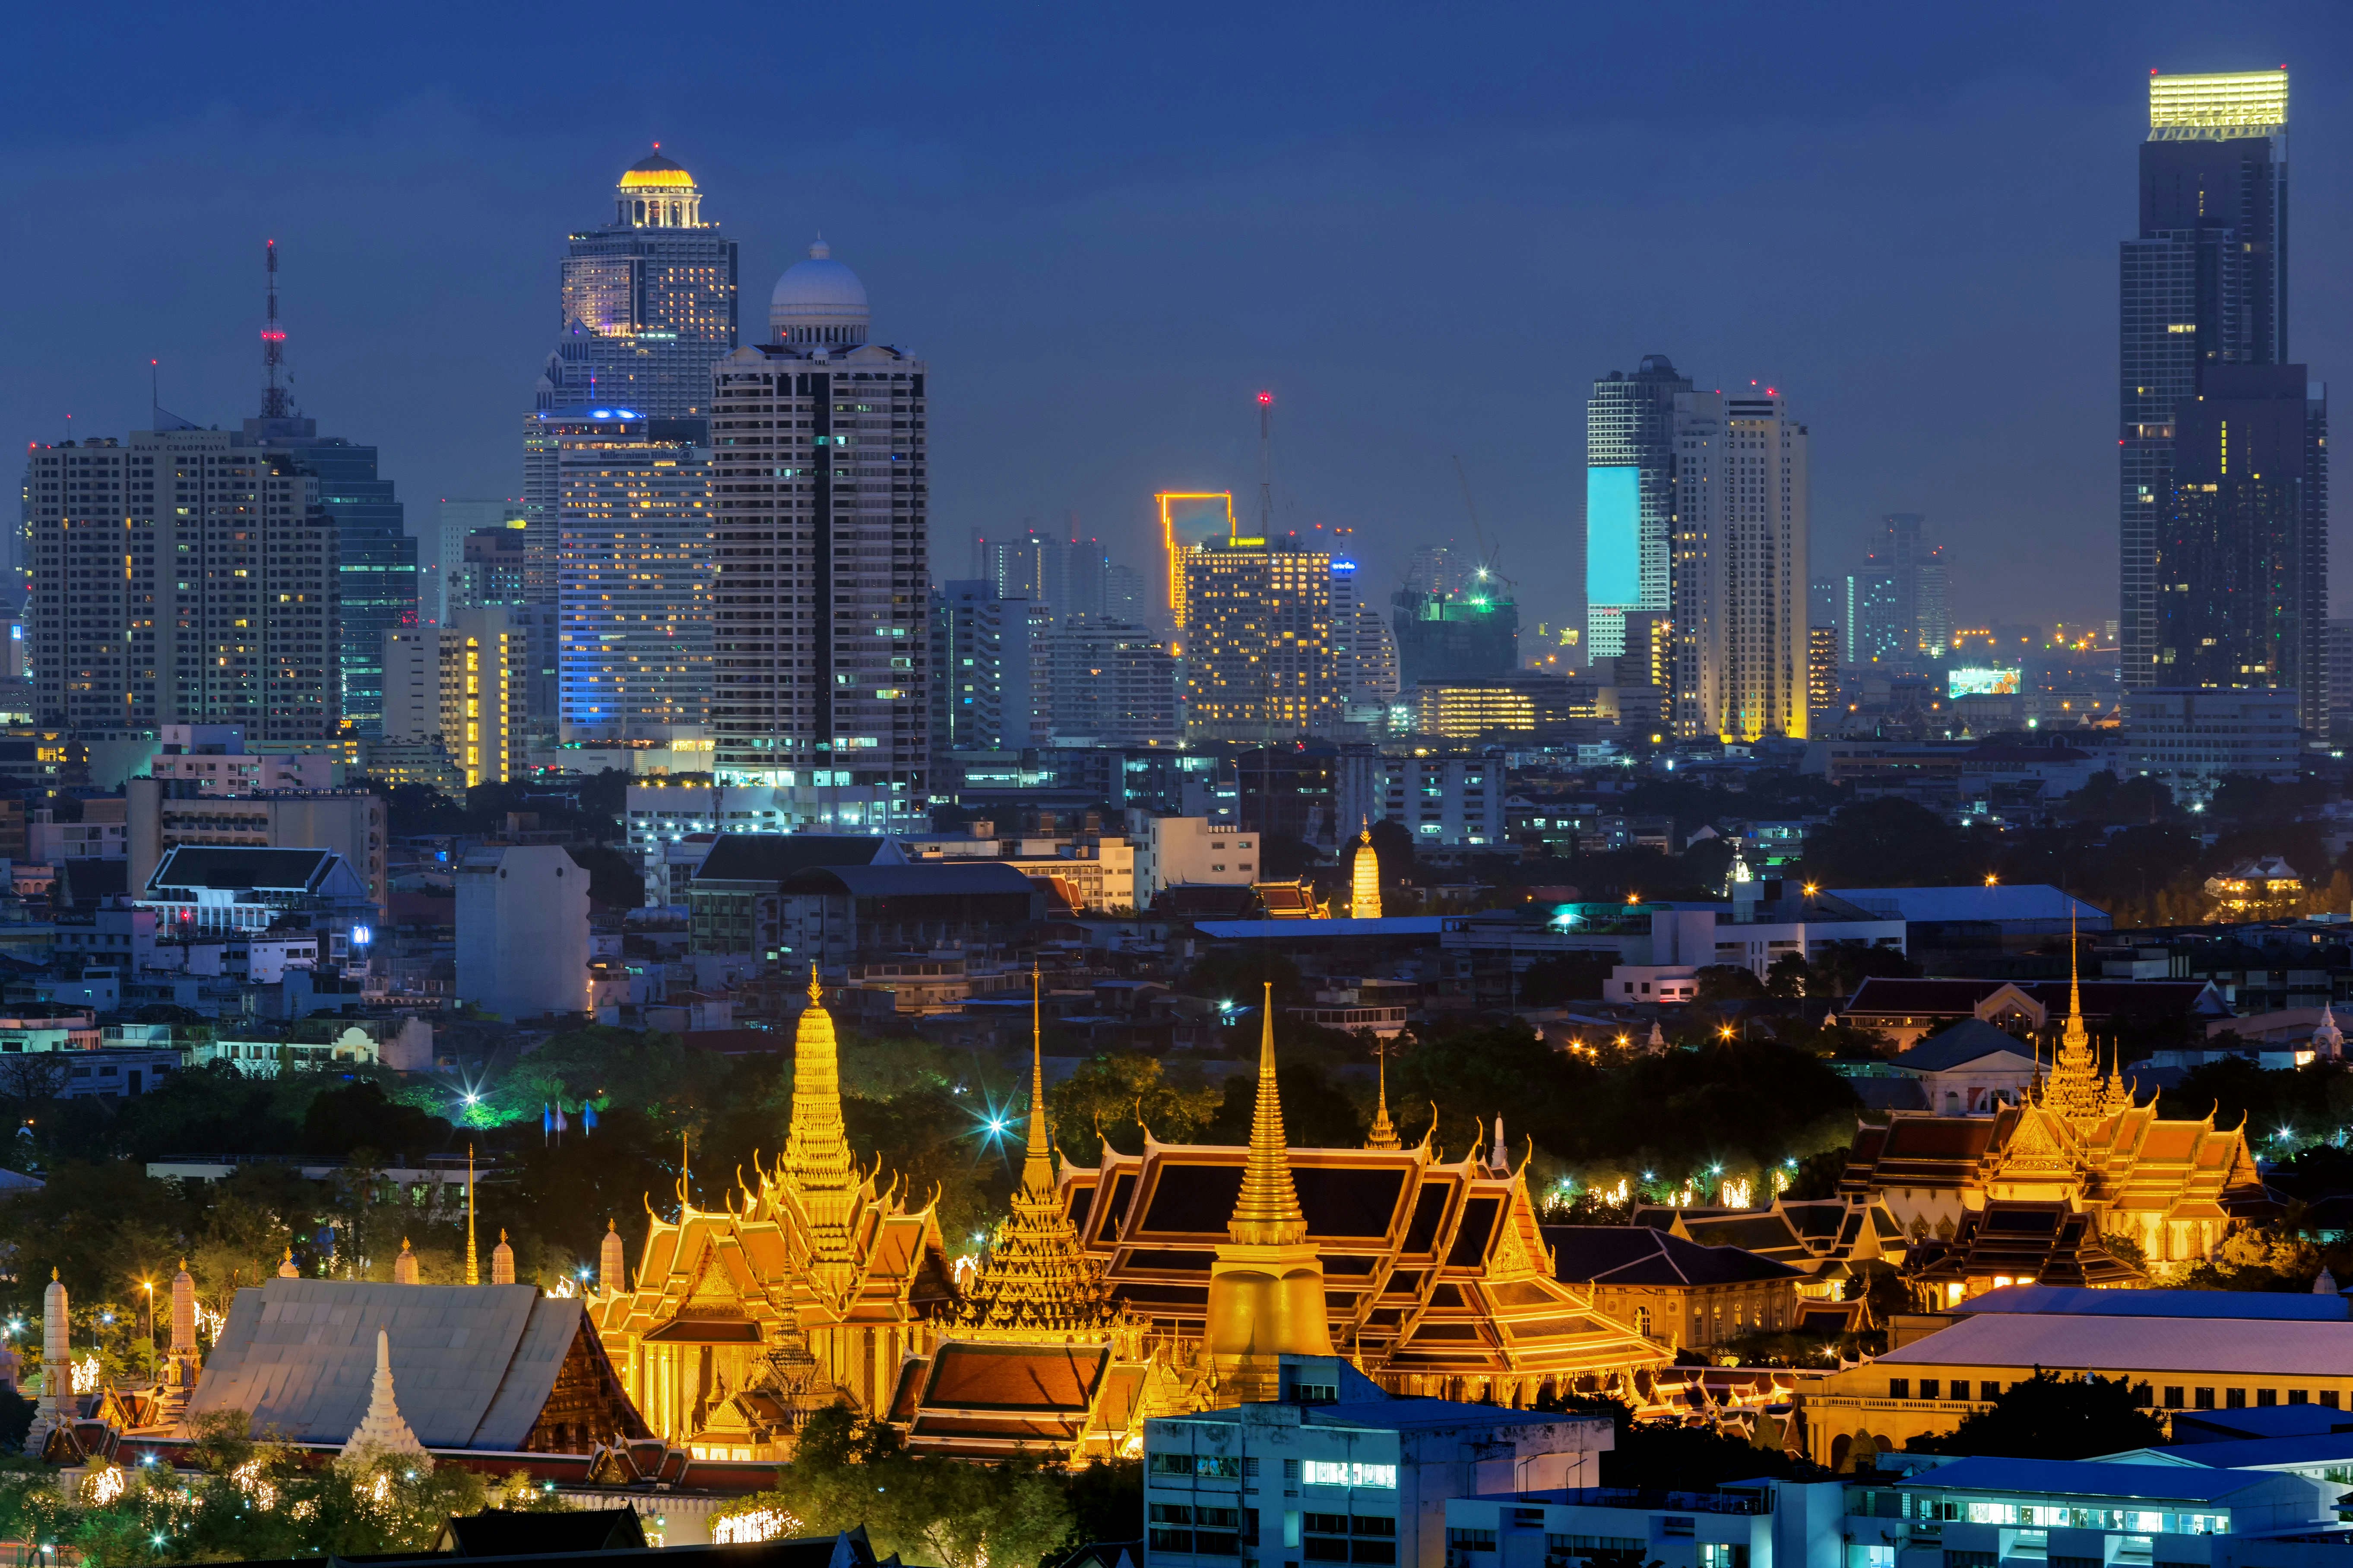 A picture of Bangkok's palace illuminated at night